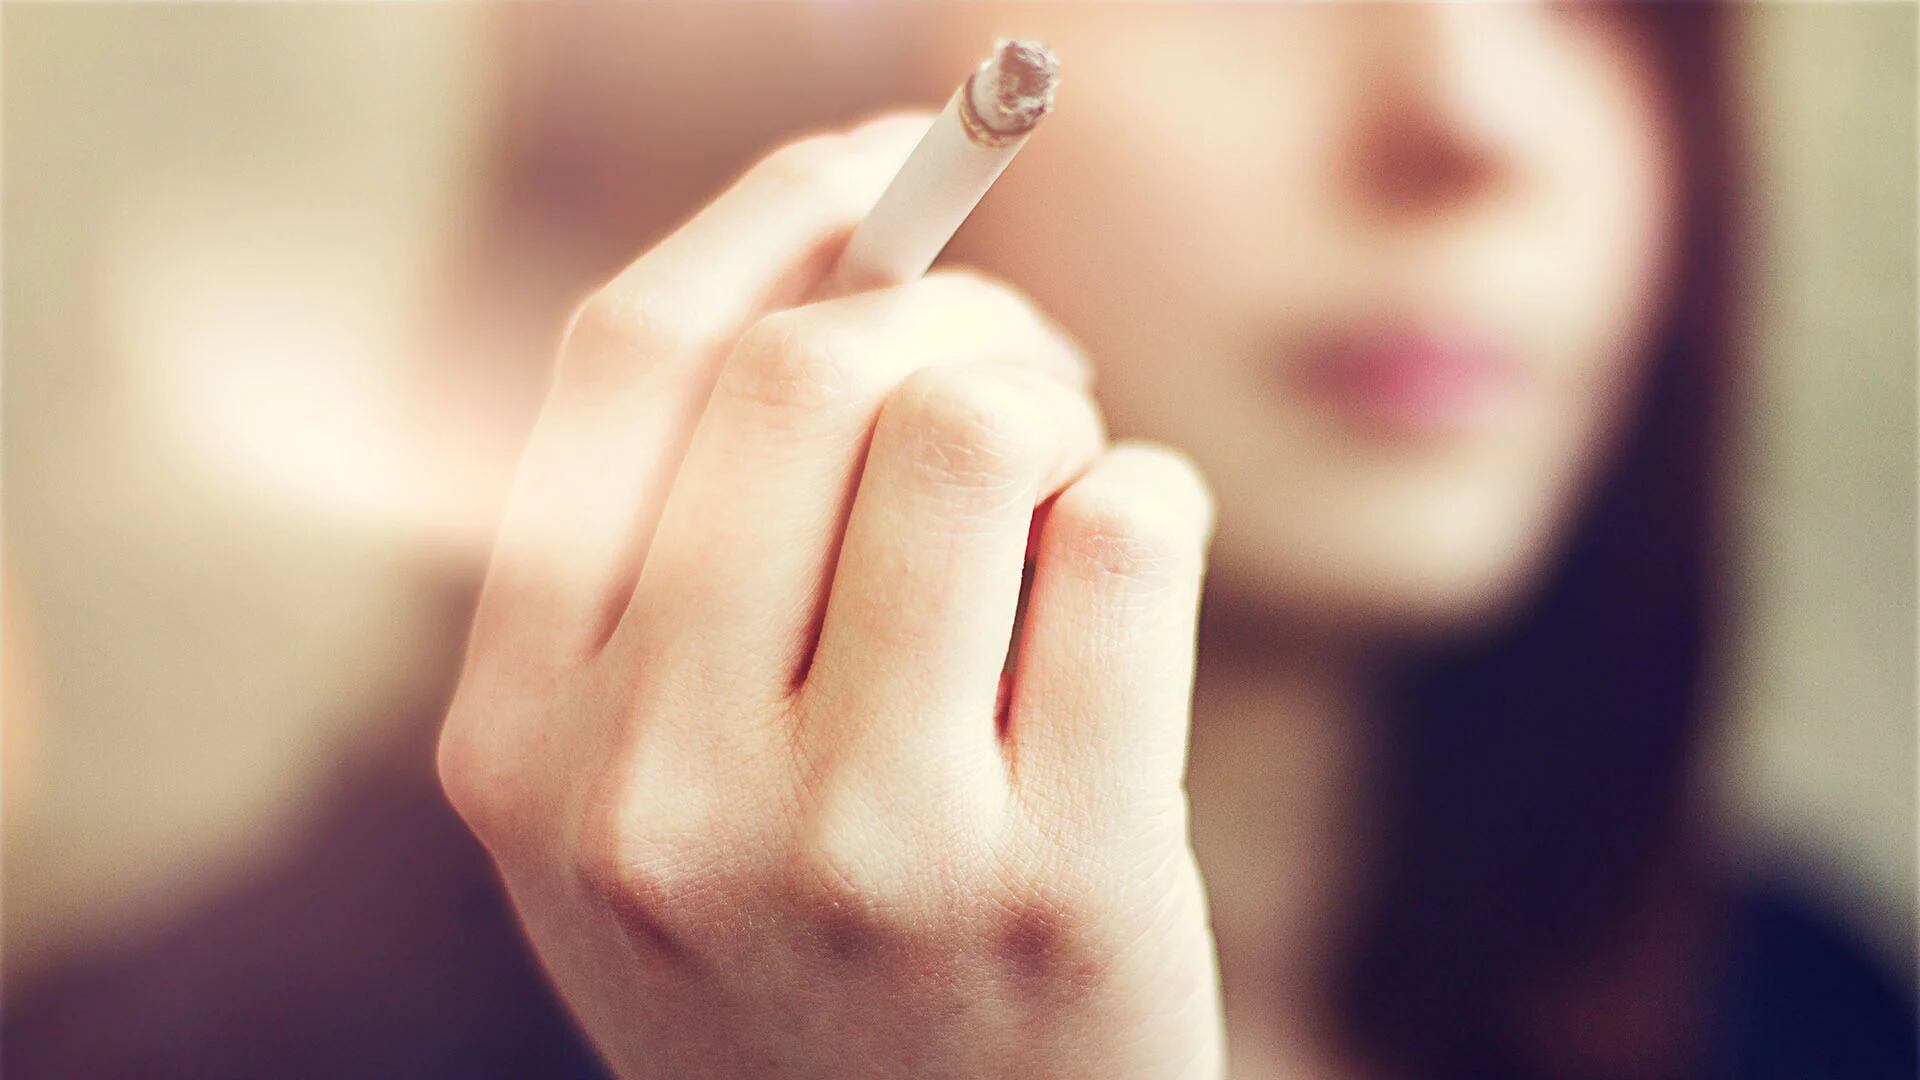 La industria tabacalera usa el marketing para engañar al público y fomentar el consumo, según OPS